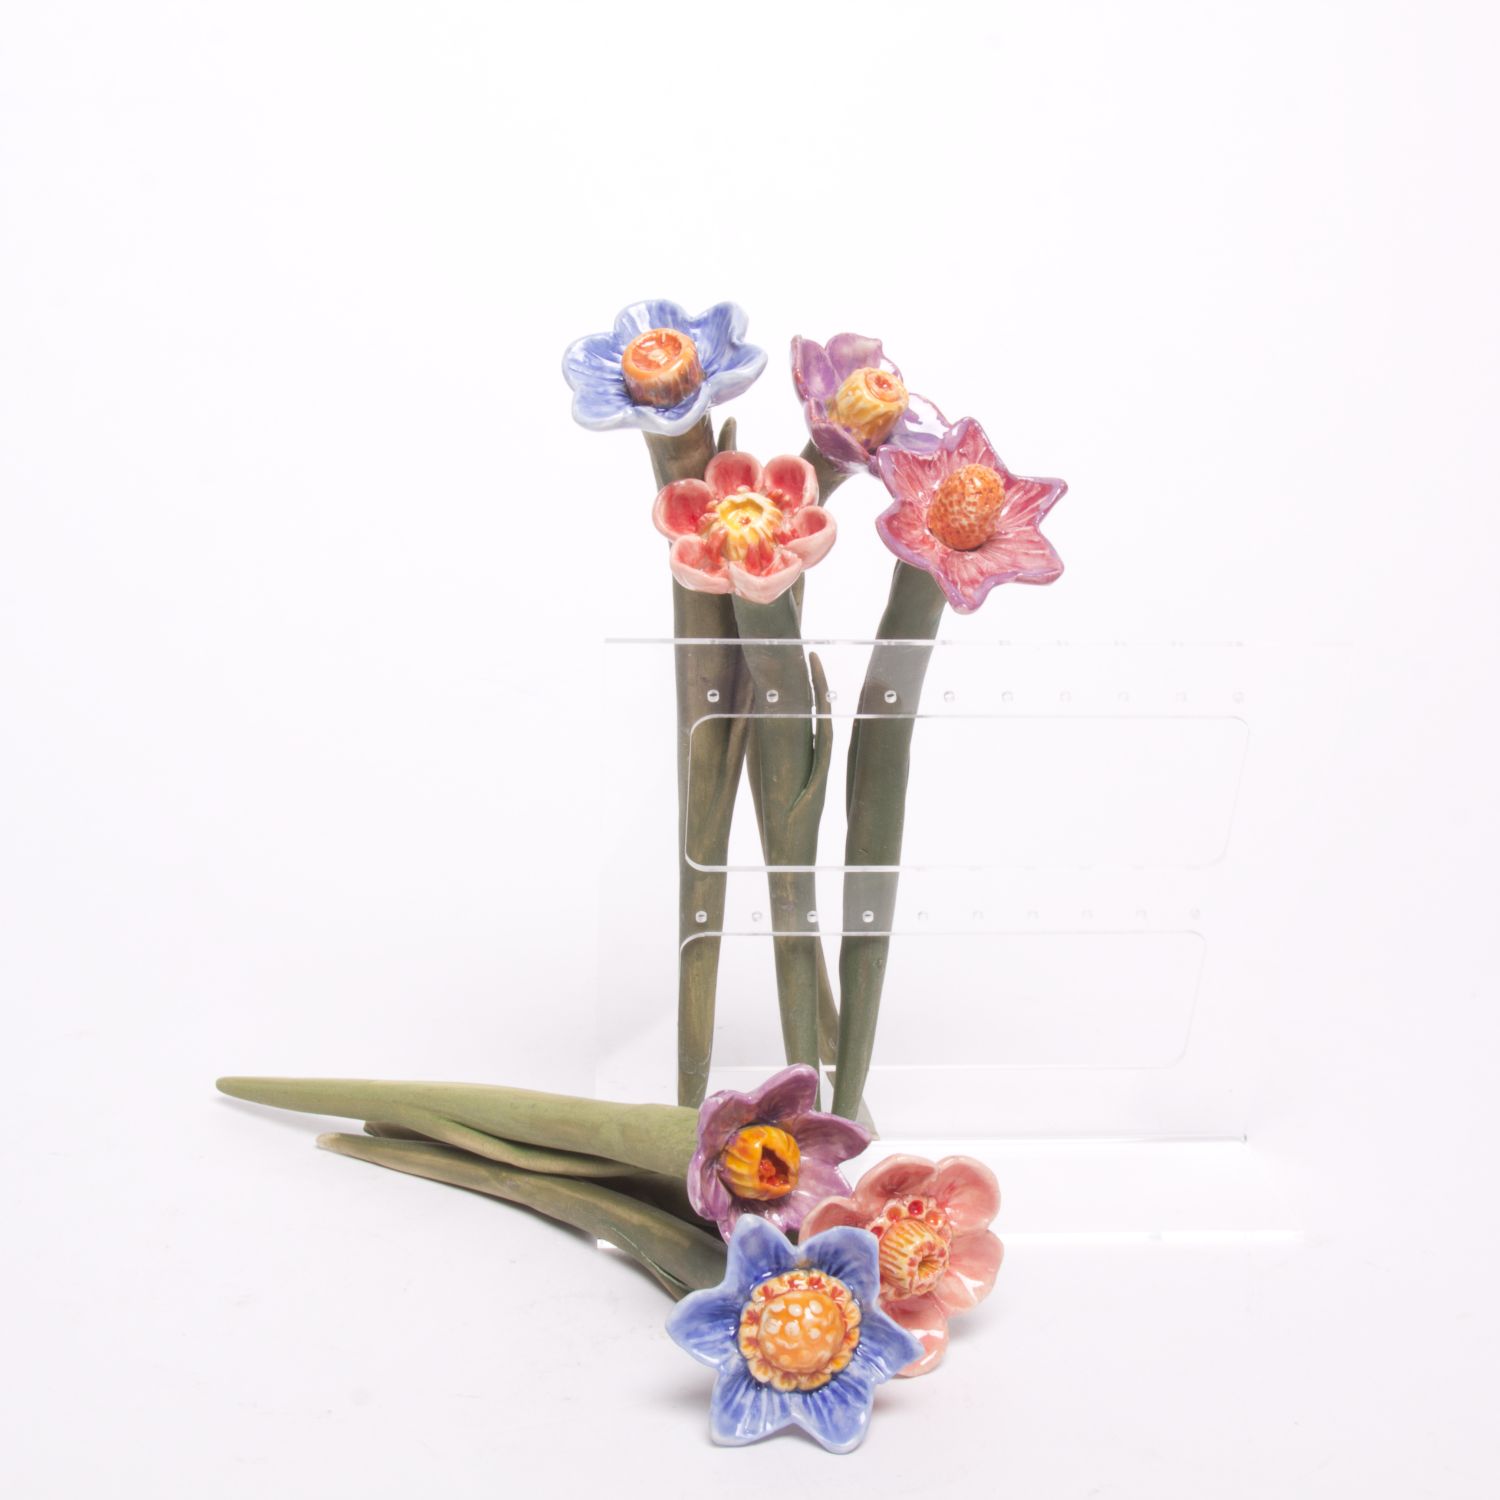 Eekta Trienekens: Narcissus Flowers (Each sold separately) Product Image 7 of 7